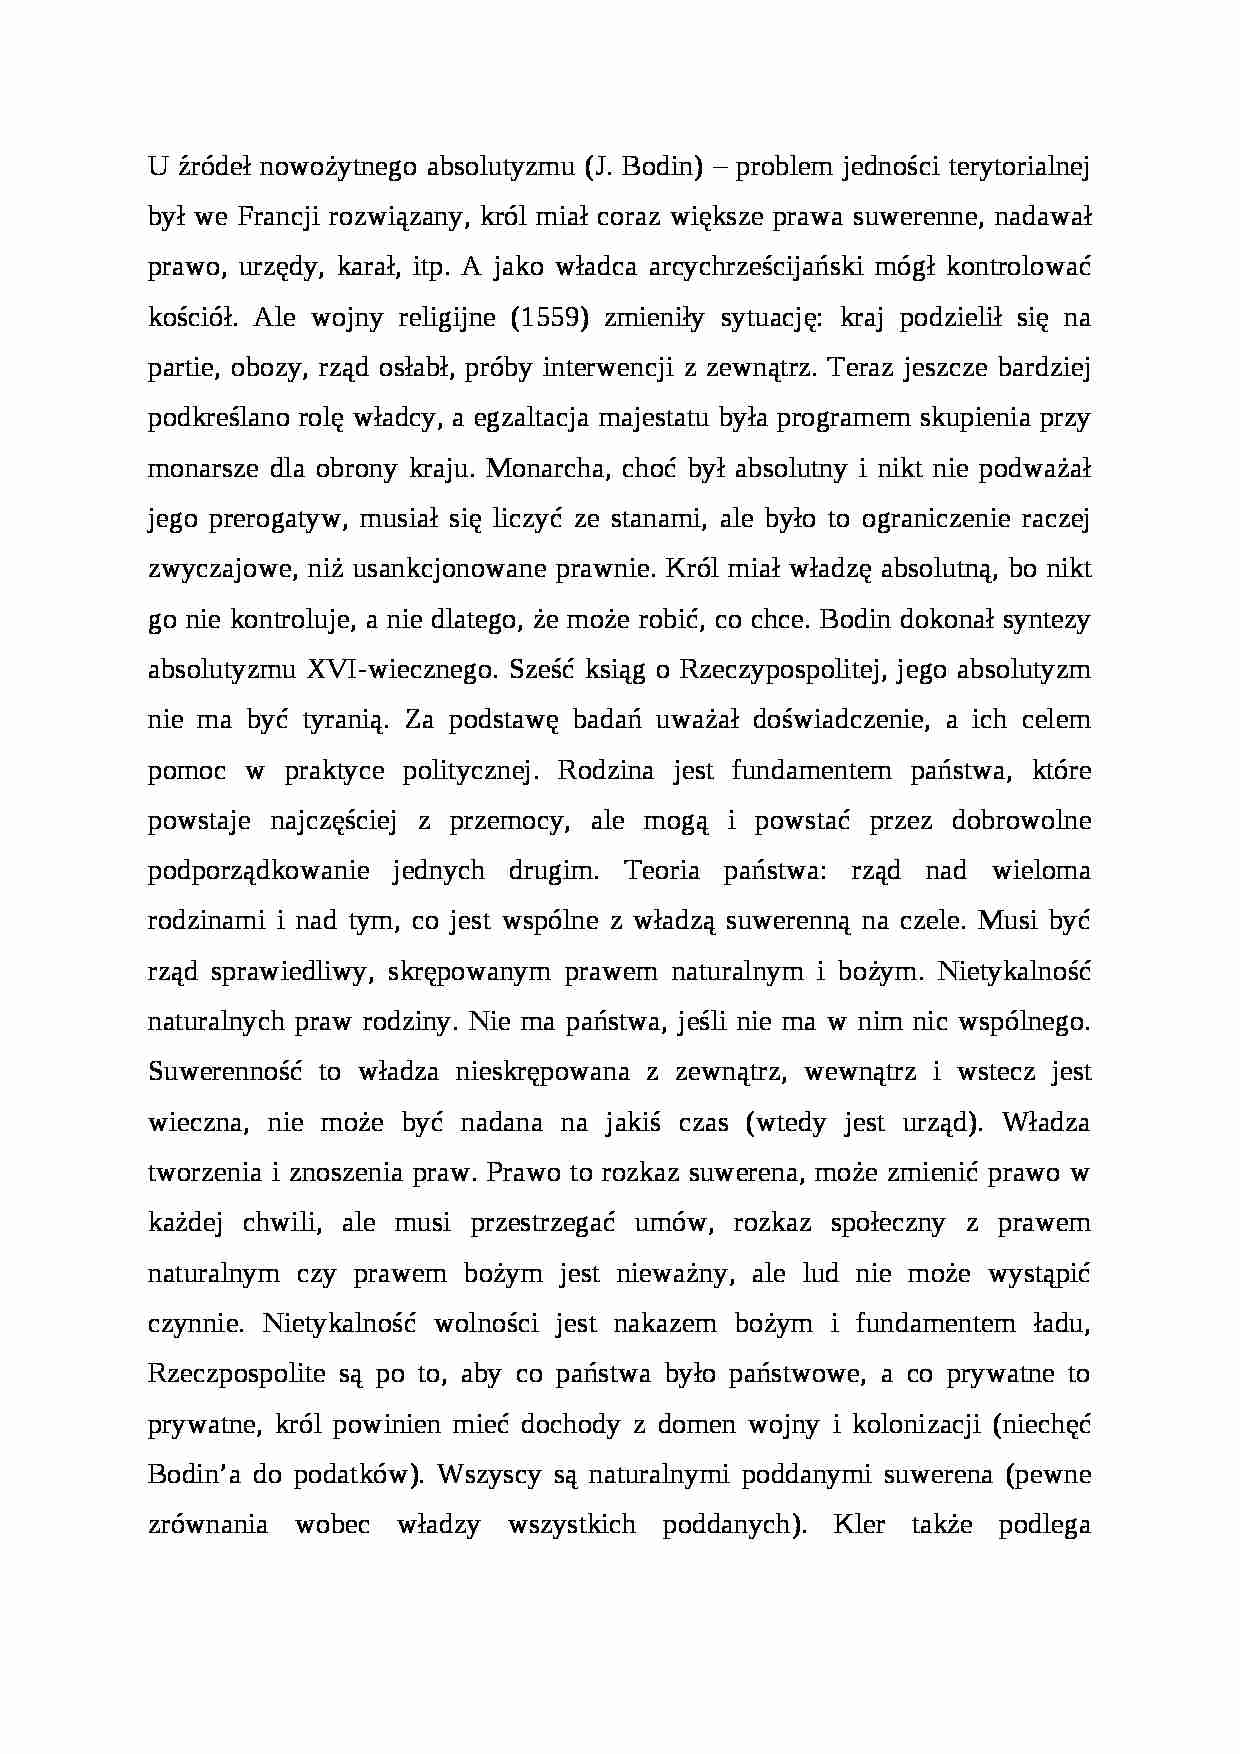 U źródeł nowoźytnego absolutyzmu (J. Bodin) - strona 1